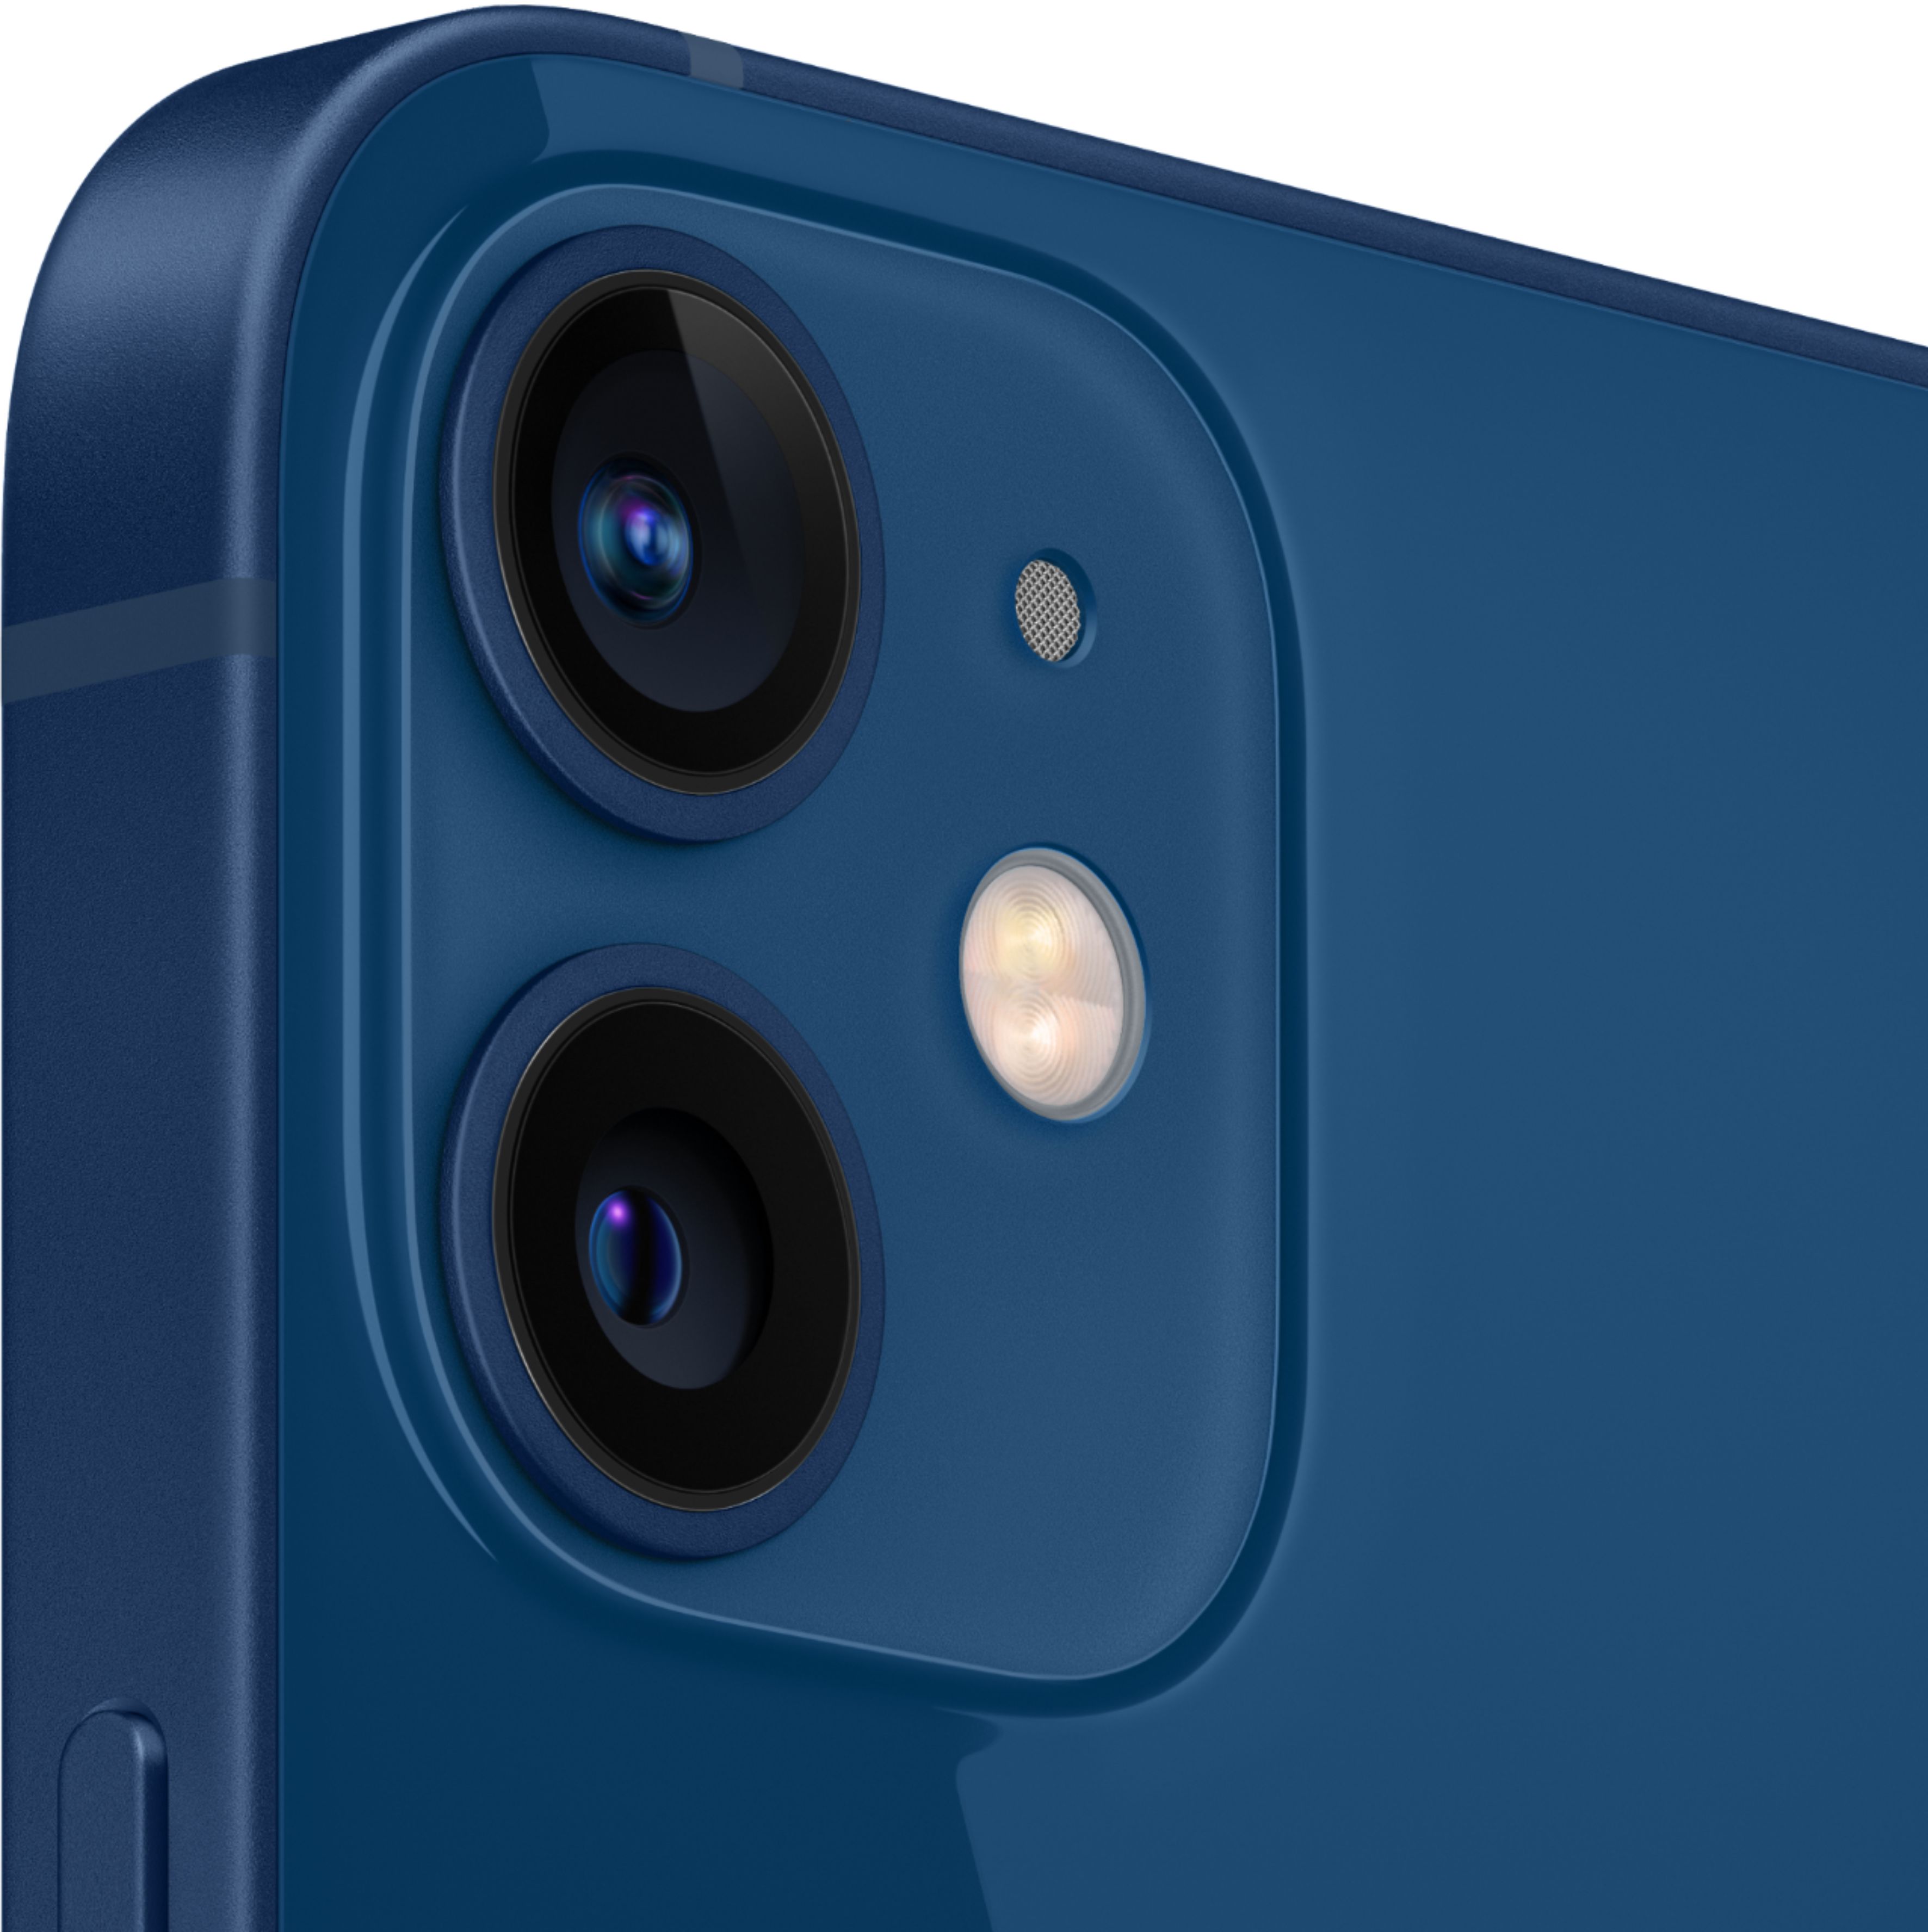 Apple iPhone 12 mini 5G 128GB Blue (Verizon) MG8P3LL/A - Best Buy